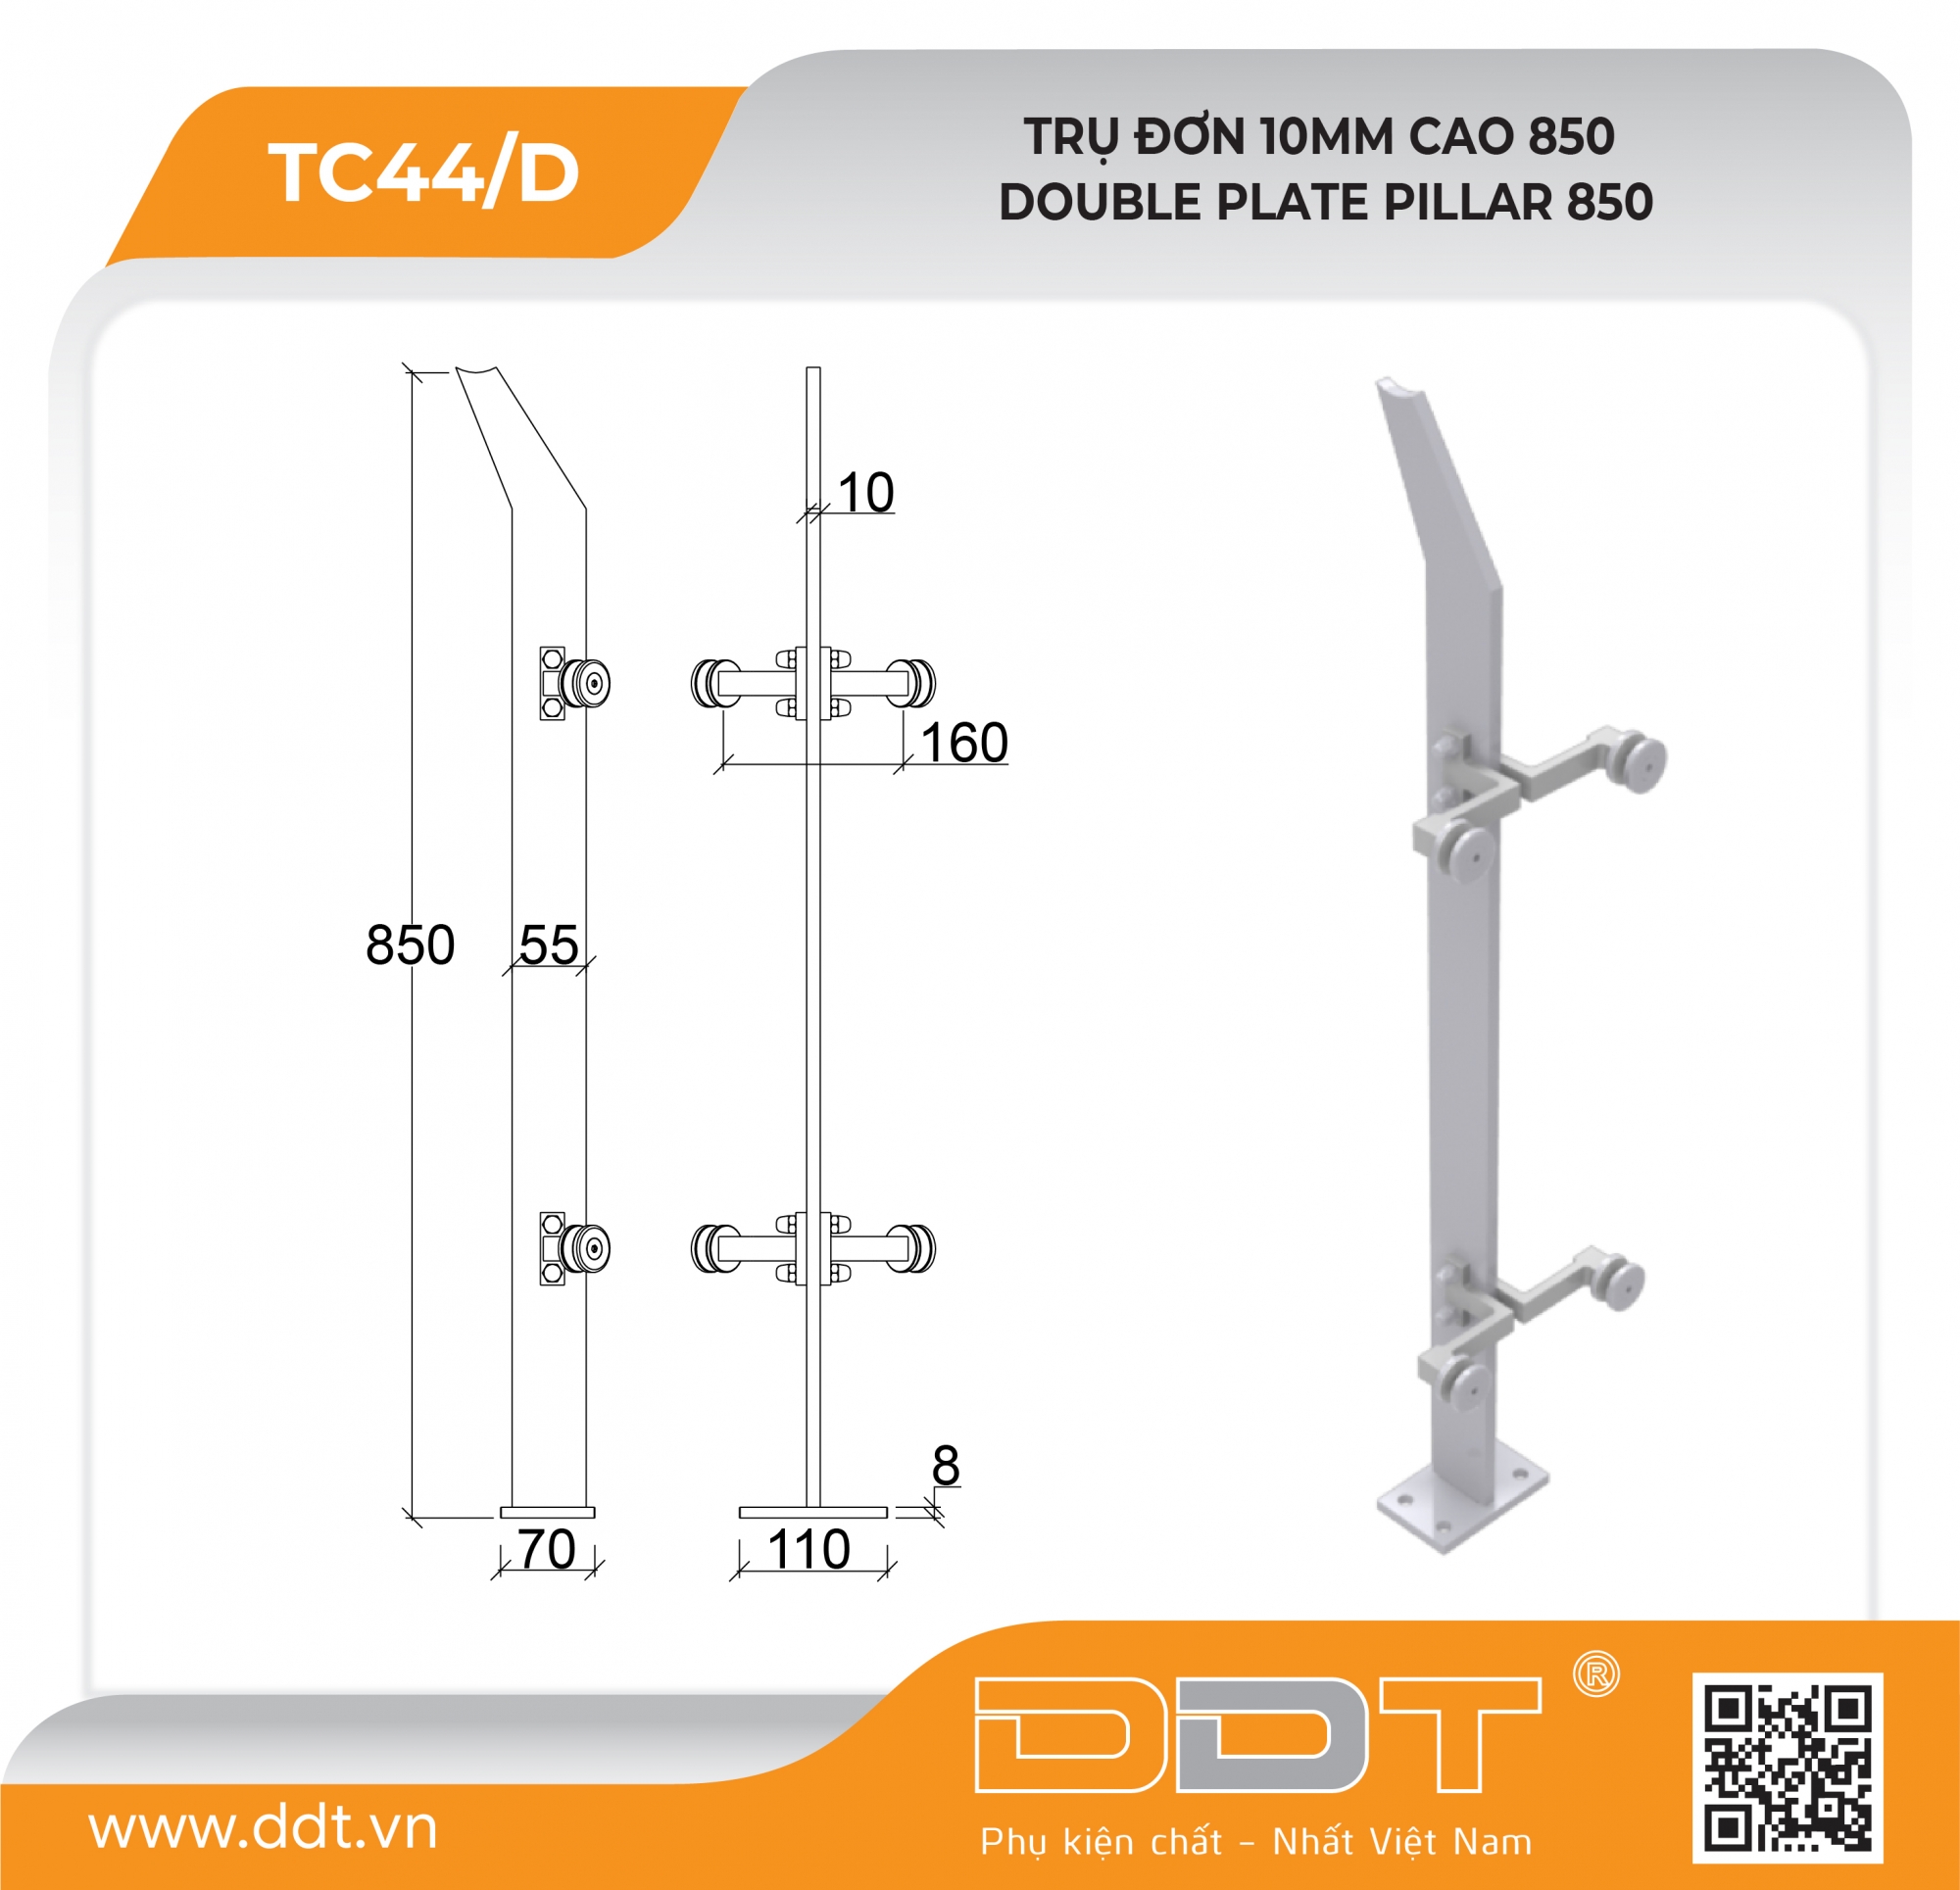 Trụ cao đơn 10ly tay đúc vuông – TC44/D